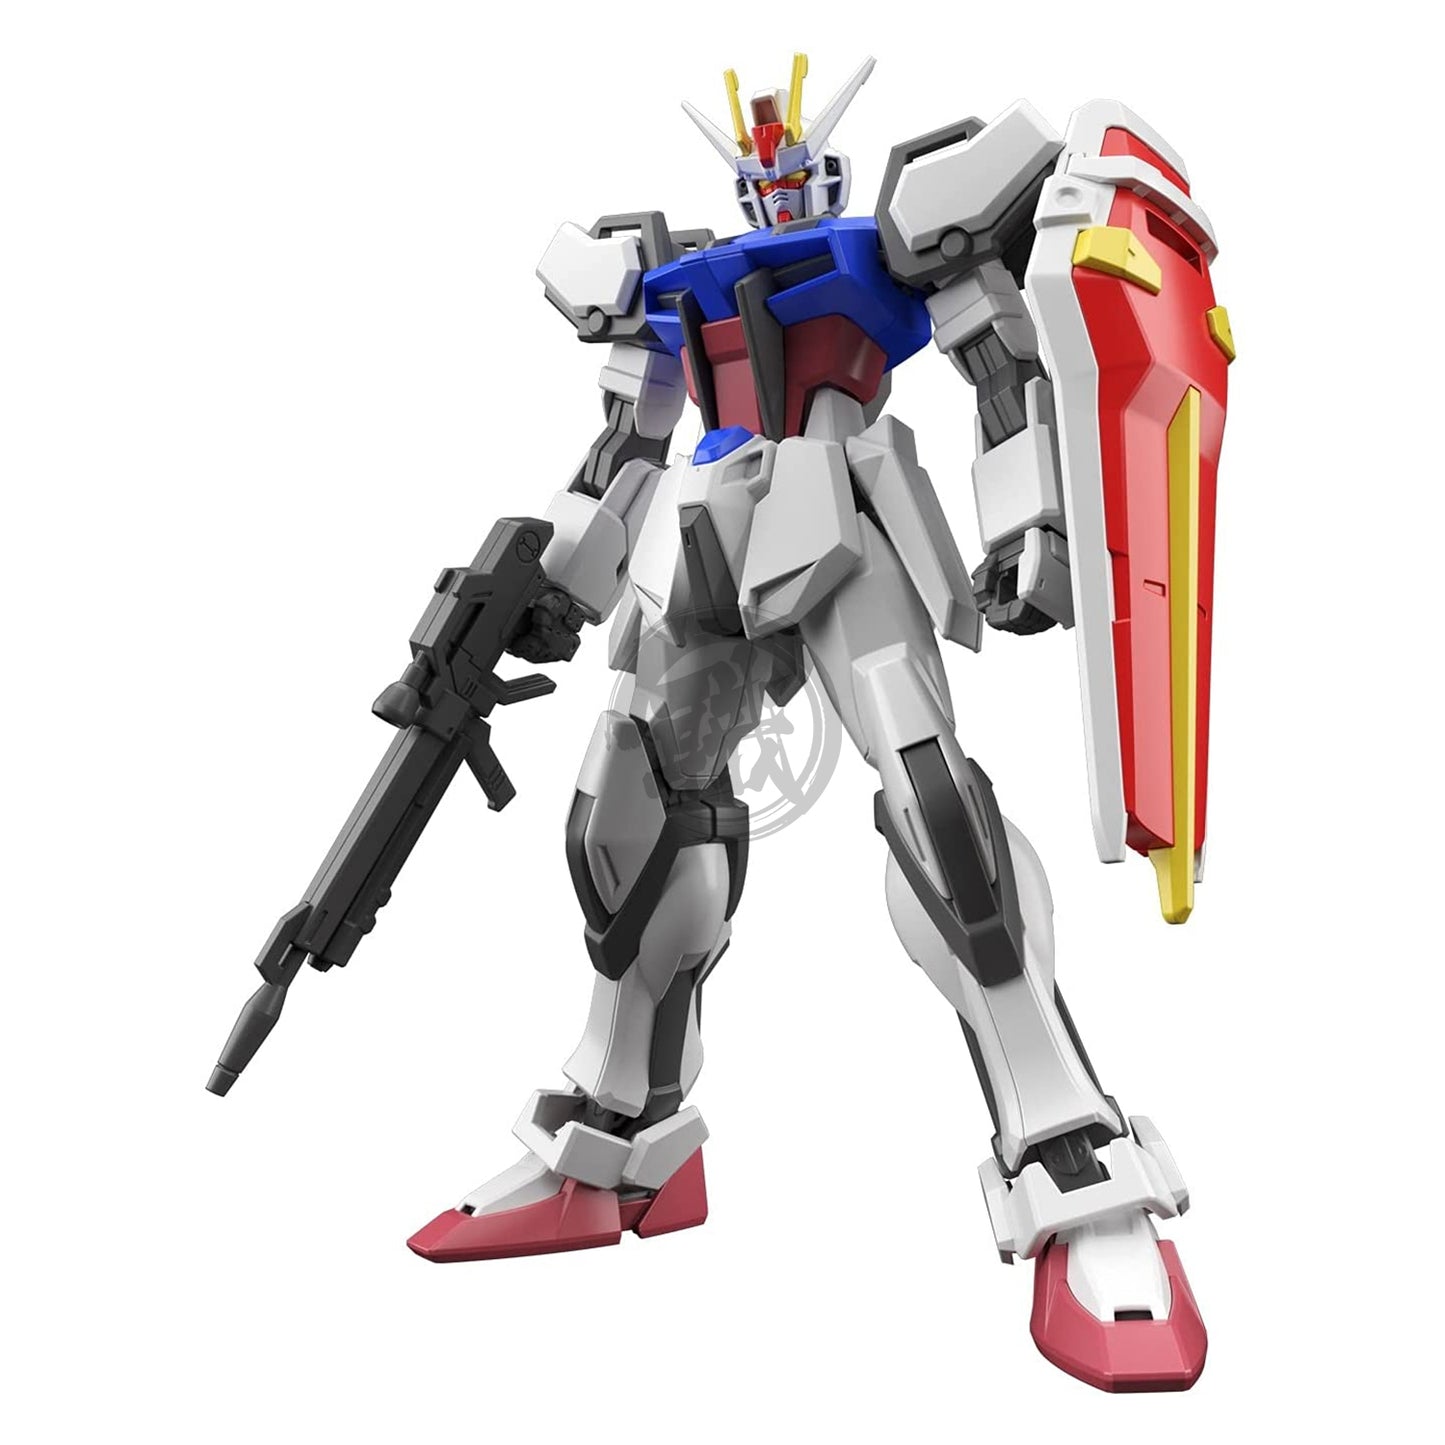 EG Strike Gundam - ShokuninGunpla